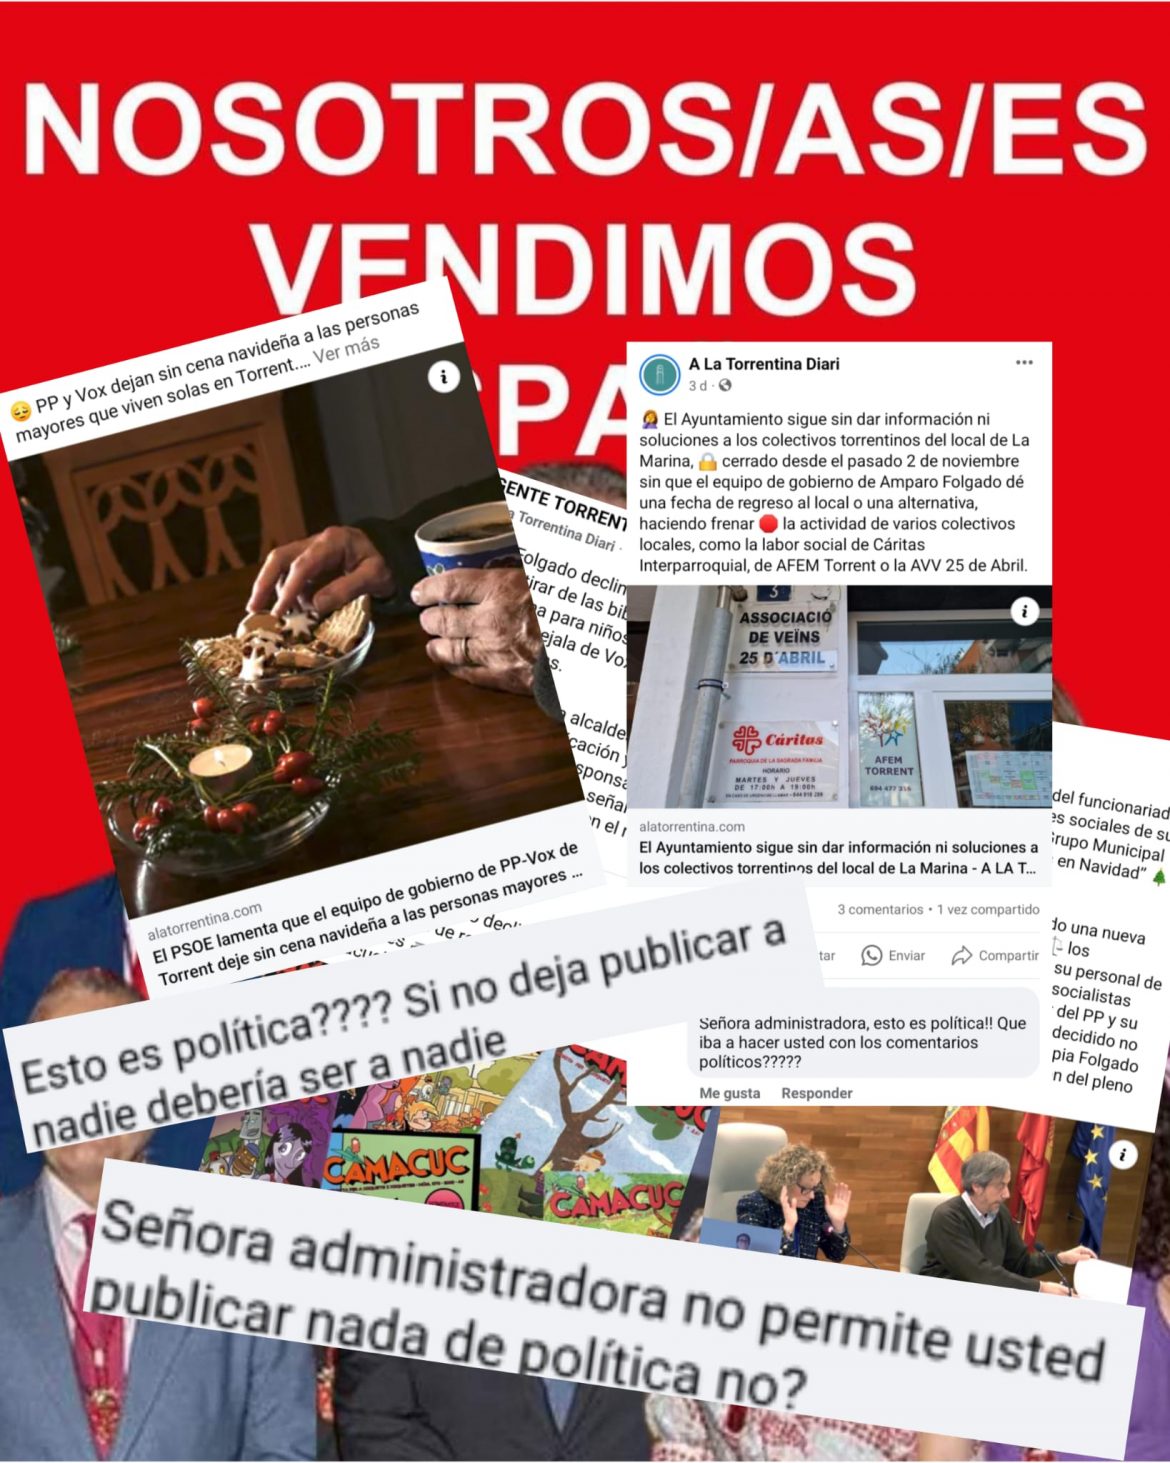 La asesora de Amparo Folgado que publicó fotomontajes señalando al Grupo Socialista pide que se censure y se eliminen noticias que hablan de la gestión de la alcaldesa